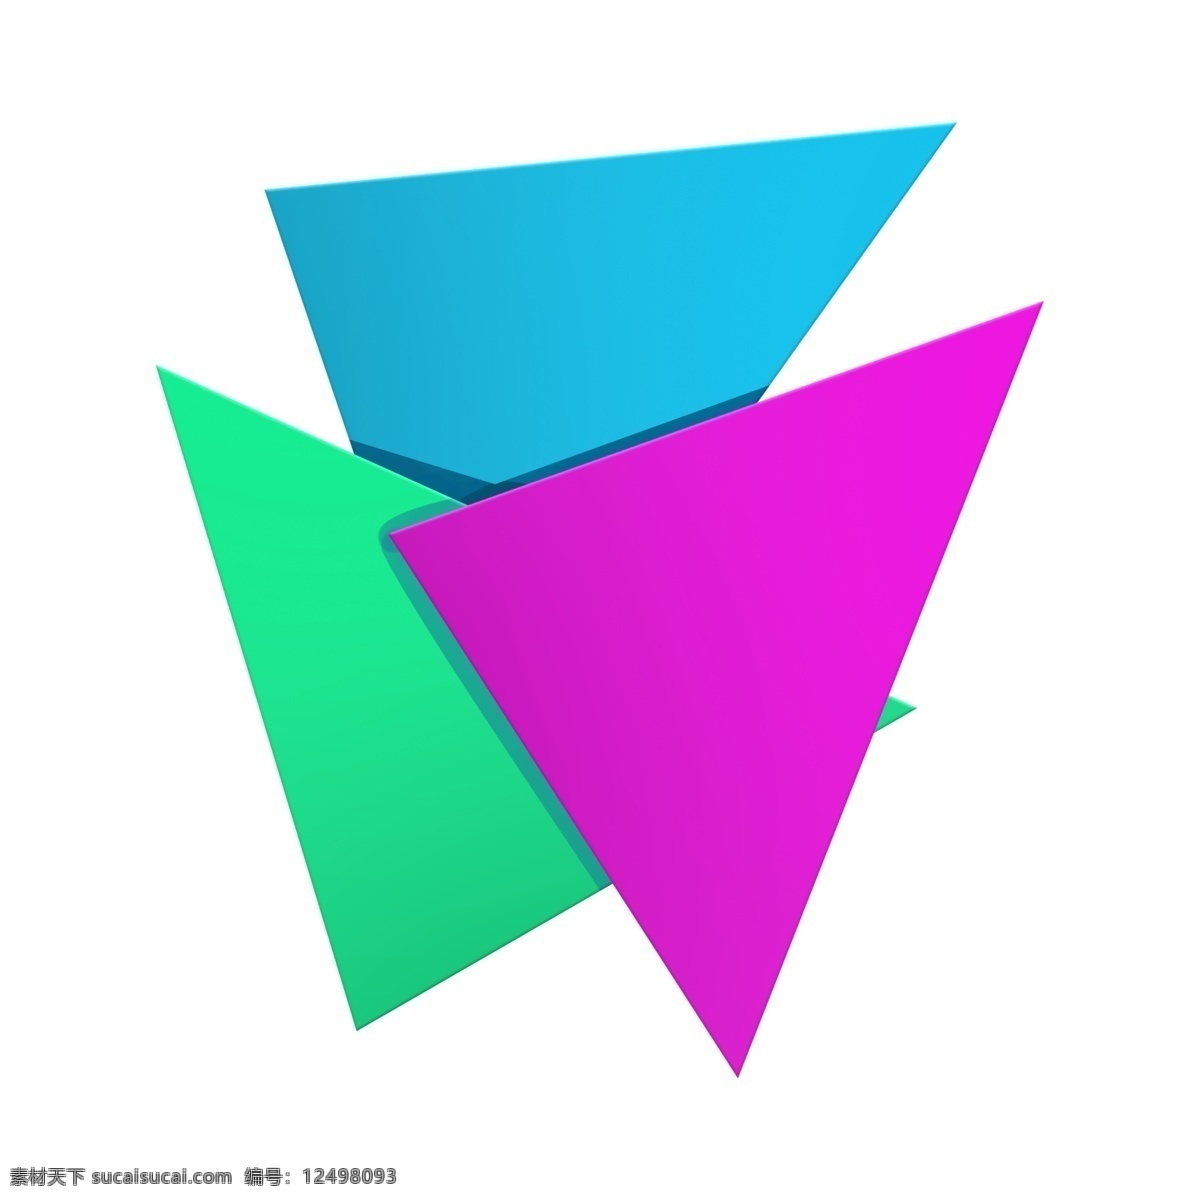 彩色 三角形 元素 三角形状 图形免费下载 不规则图型 几何图形 组合 装饰 粉色 绿色 蓝色